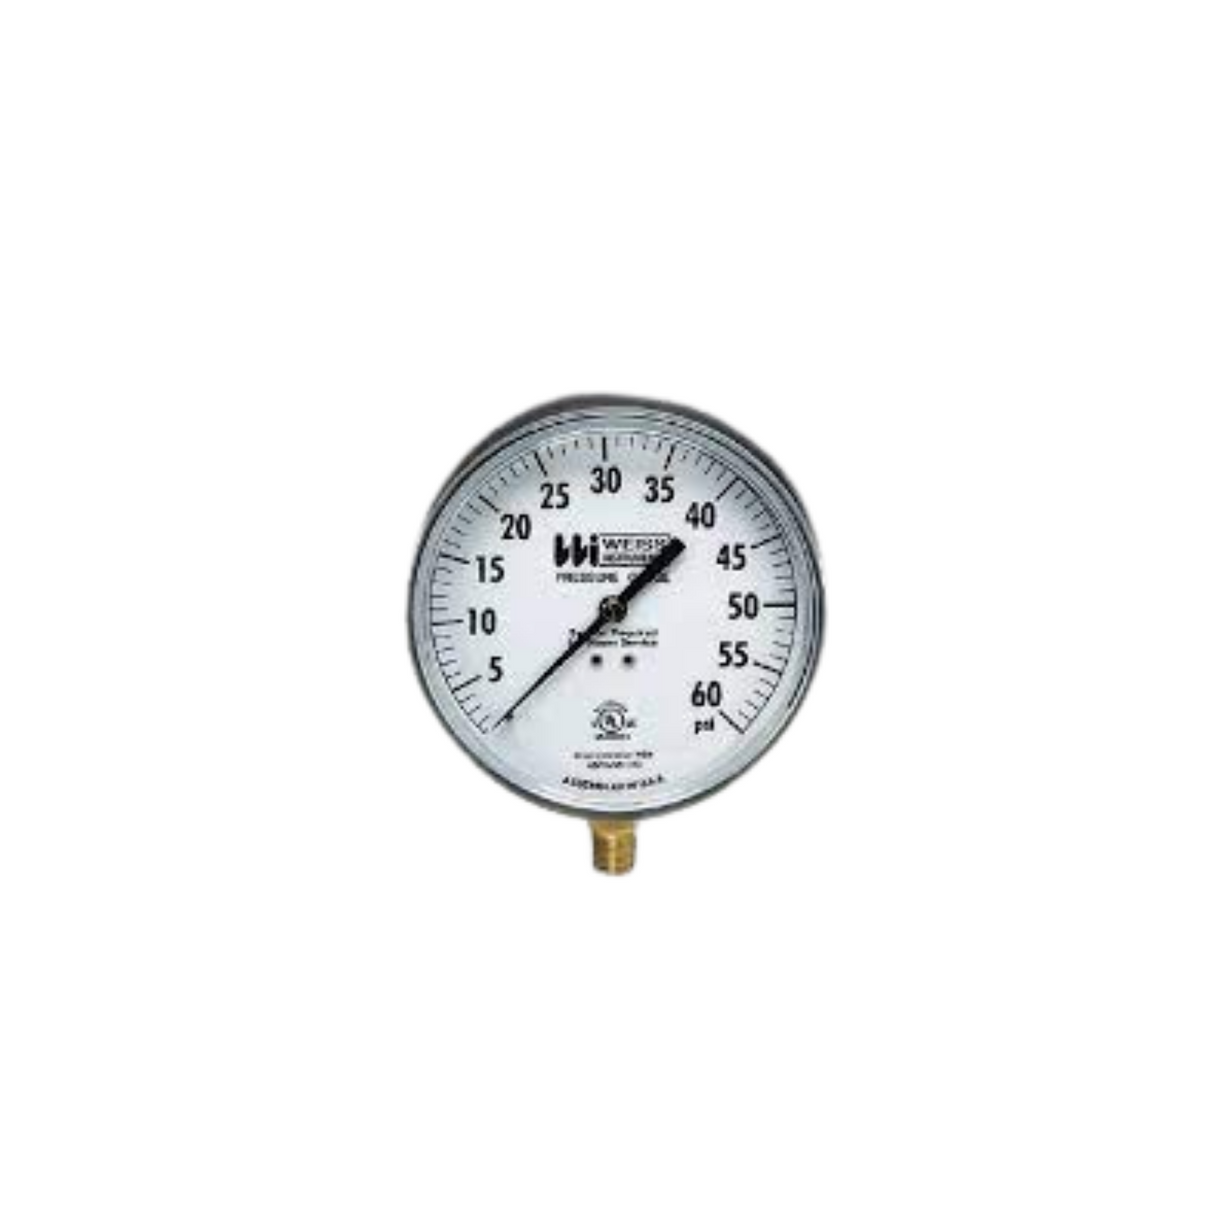 Weiss Instruments TL25-060-4L 1/4" Male 0-60 PSI Range 2.5" Round Pressure Gauge